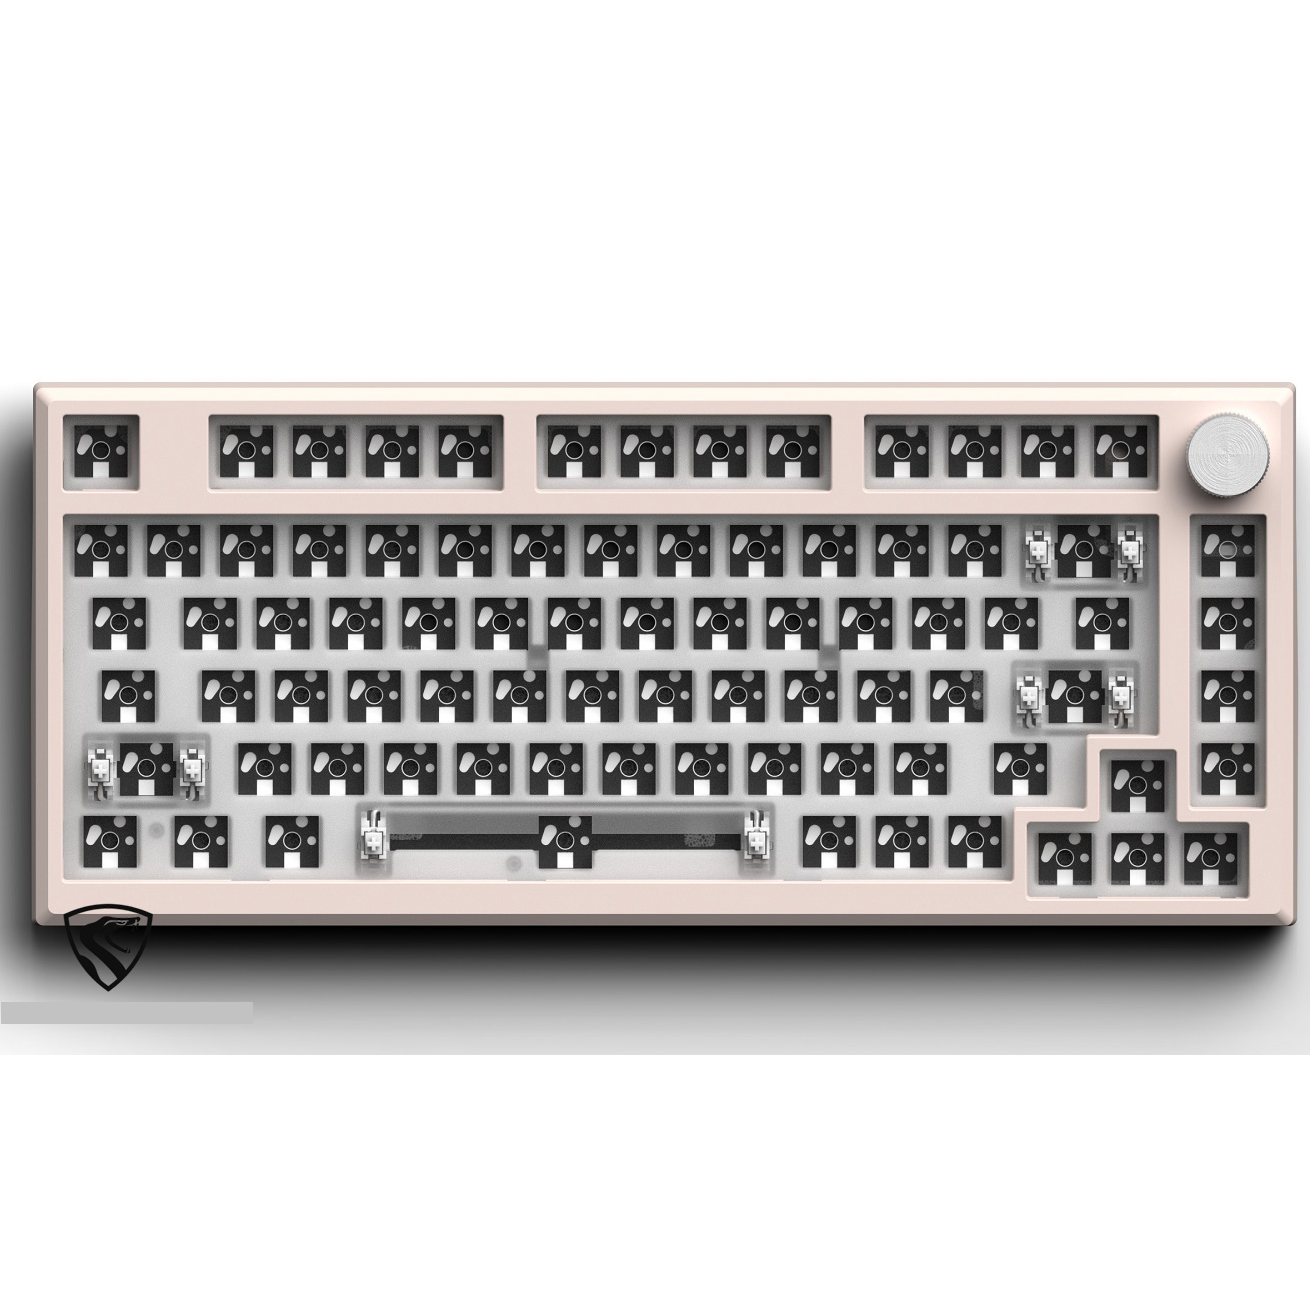 KIT bàn phím cơ không dây MK750 | 3 modes | Hotswap |  Mạch xuôi | Hàng chính hãng